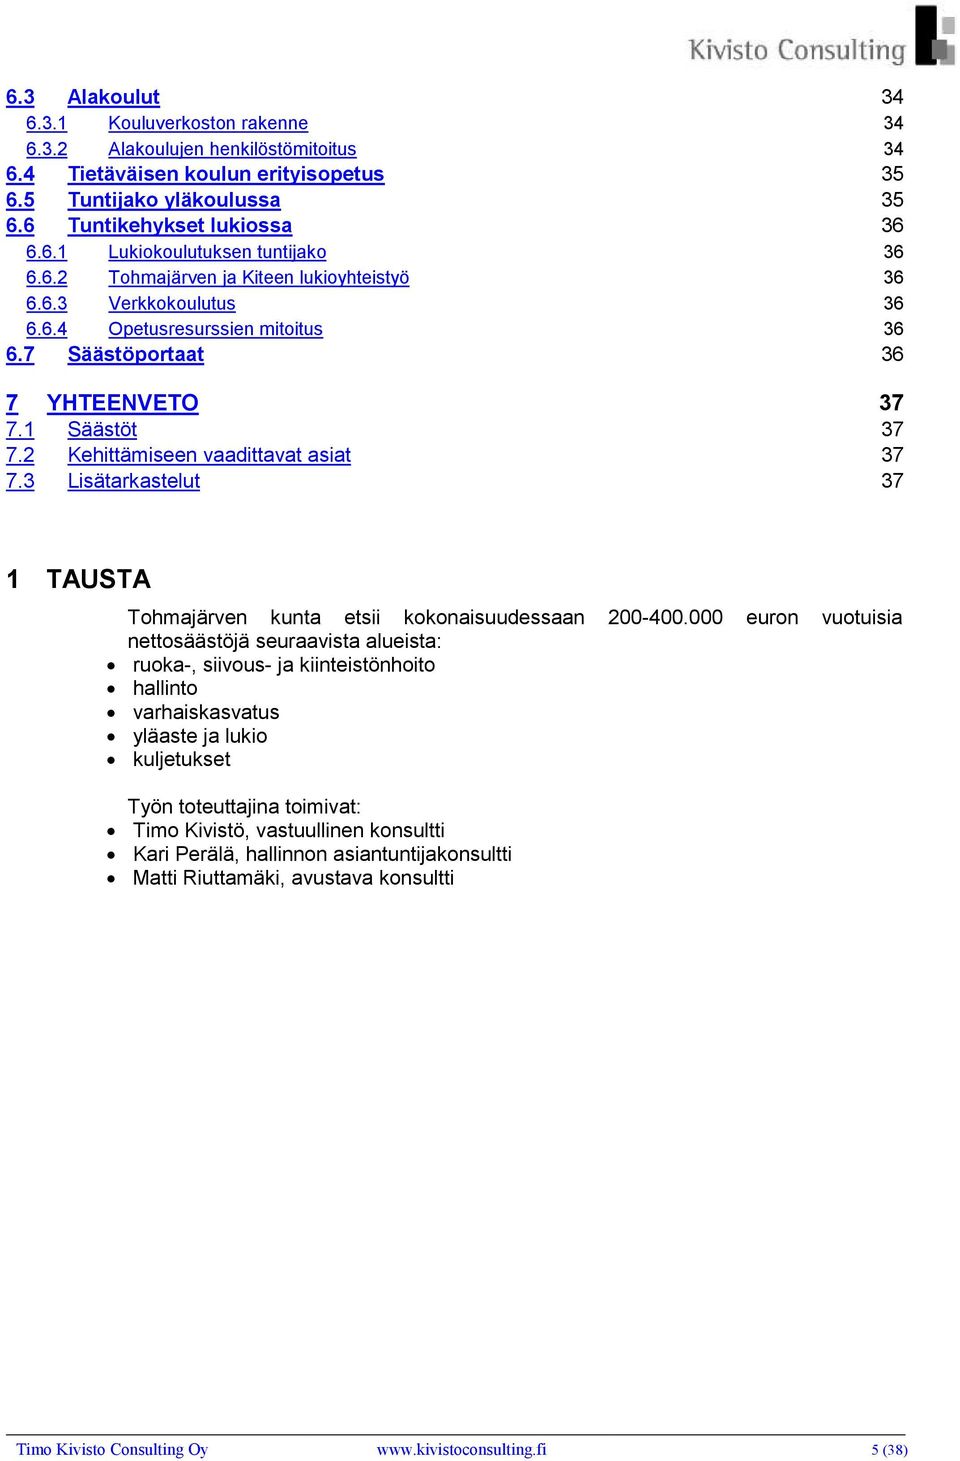 3 Lisätarkastelut 37 1 TAUSTA Tohmajärven kunta etsii kokonaisuudessaan 200-400.